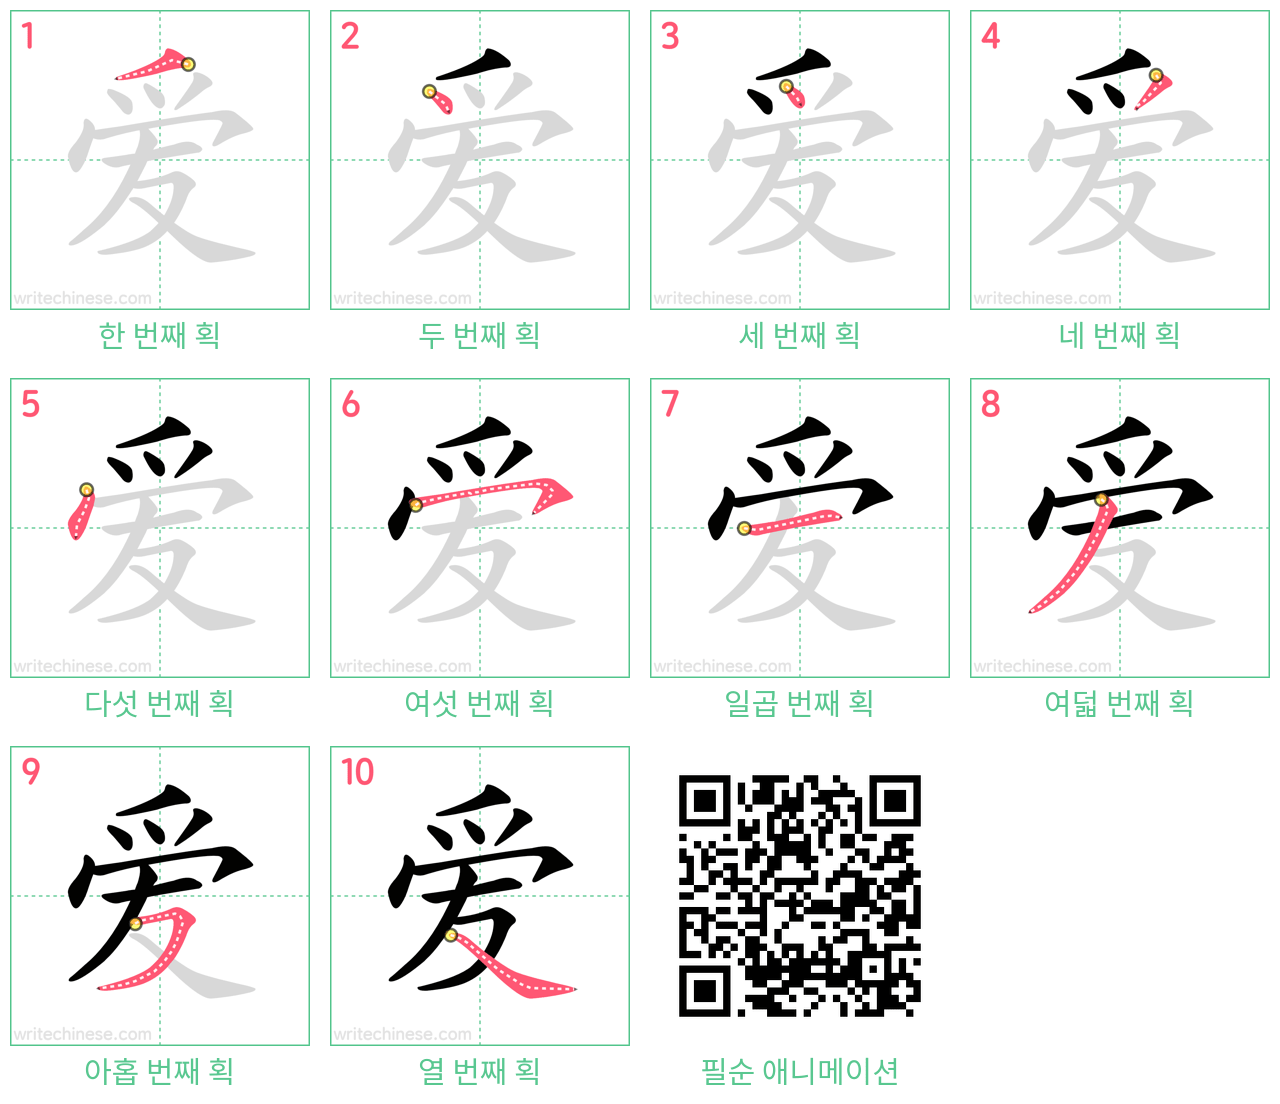 爱 step-by-step stroke order diagrams